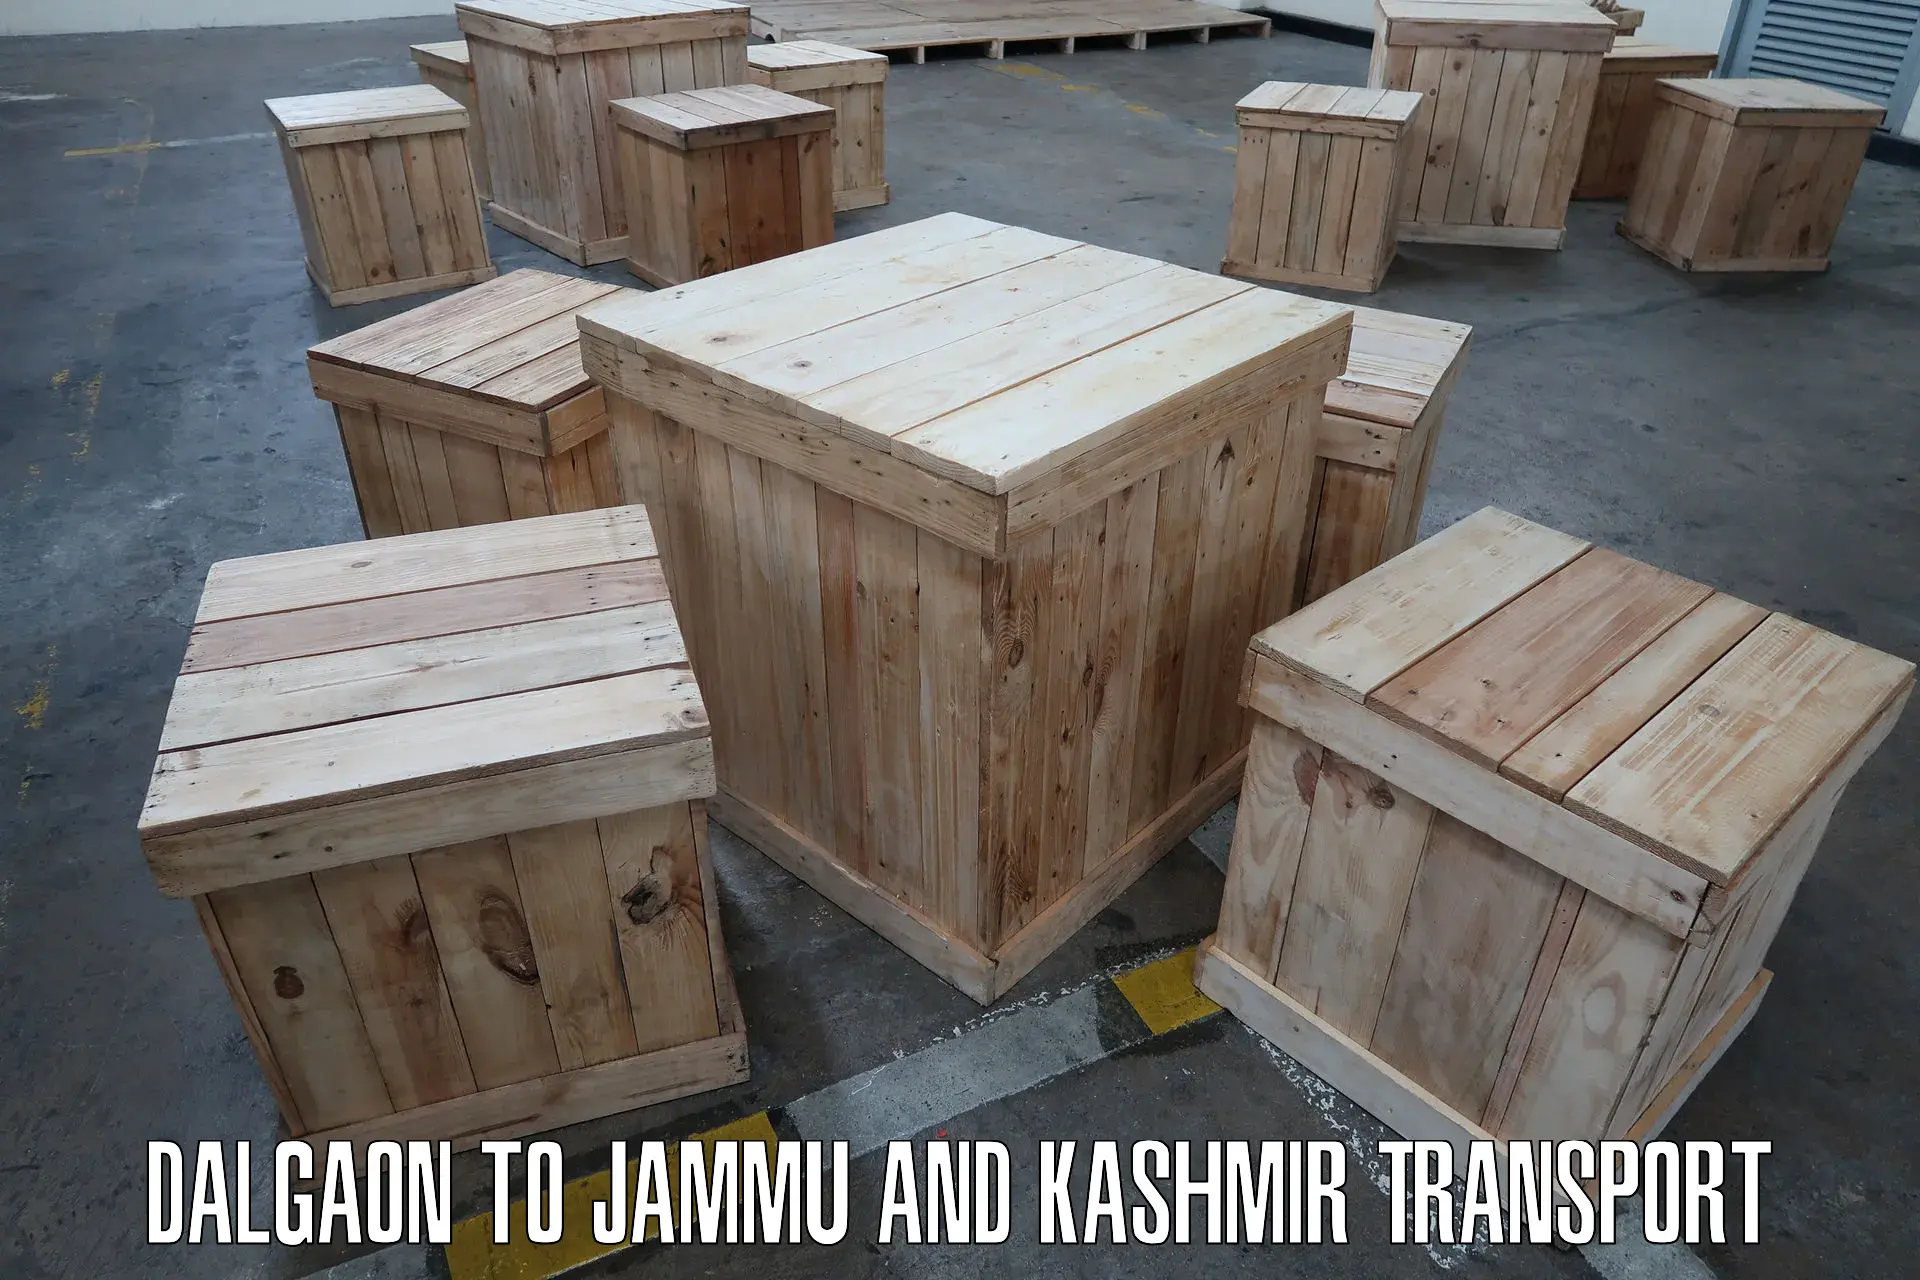 Bike shipping service Dalgaon to Jammu and Kashmir